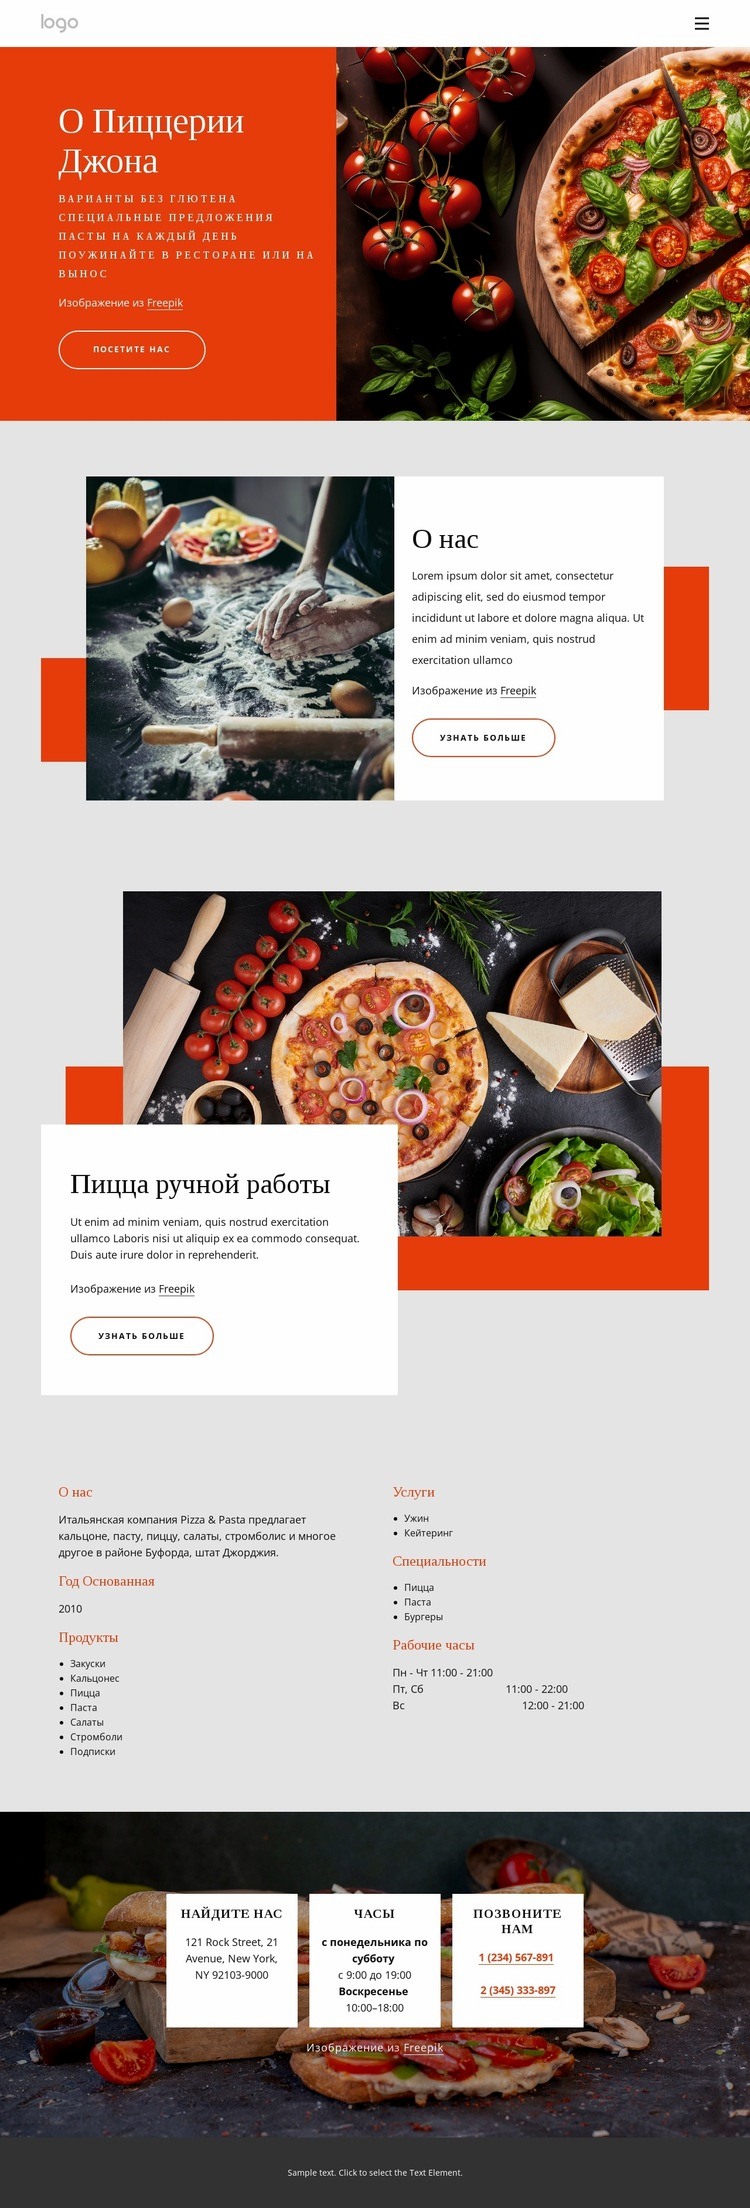 О нашей пиццерии HTML5 шаблон